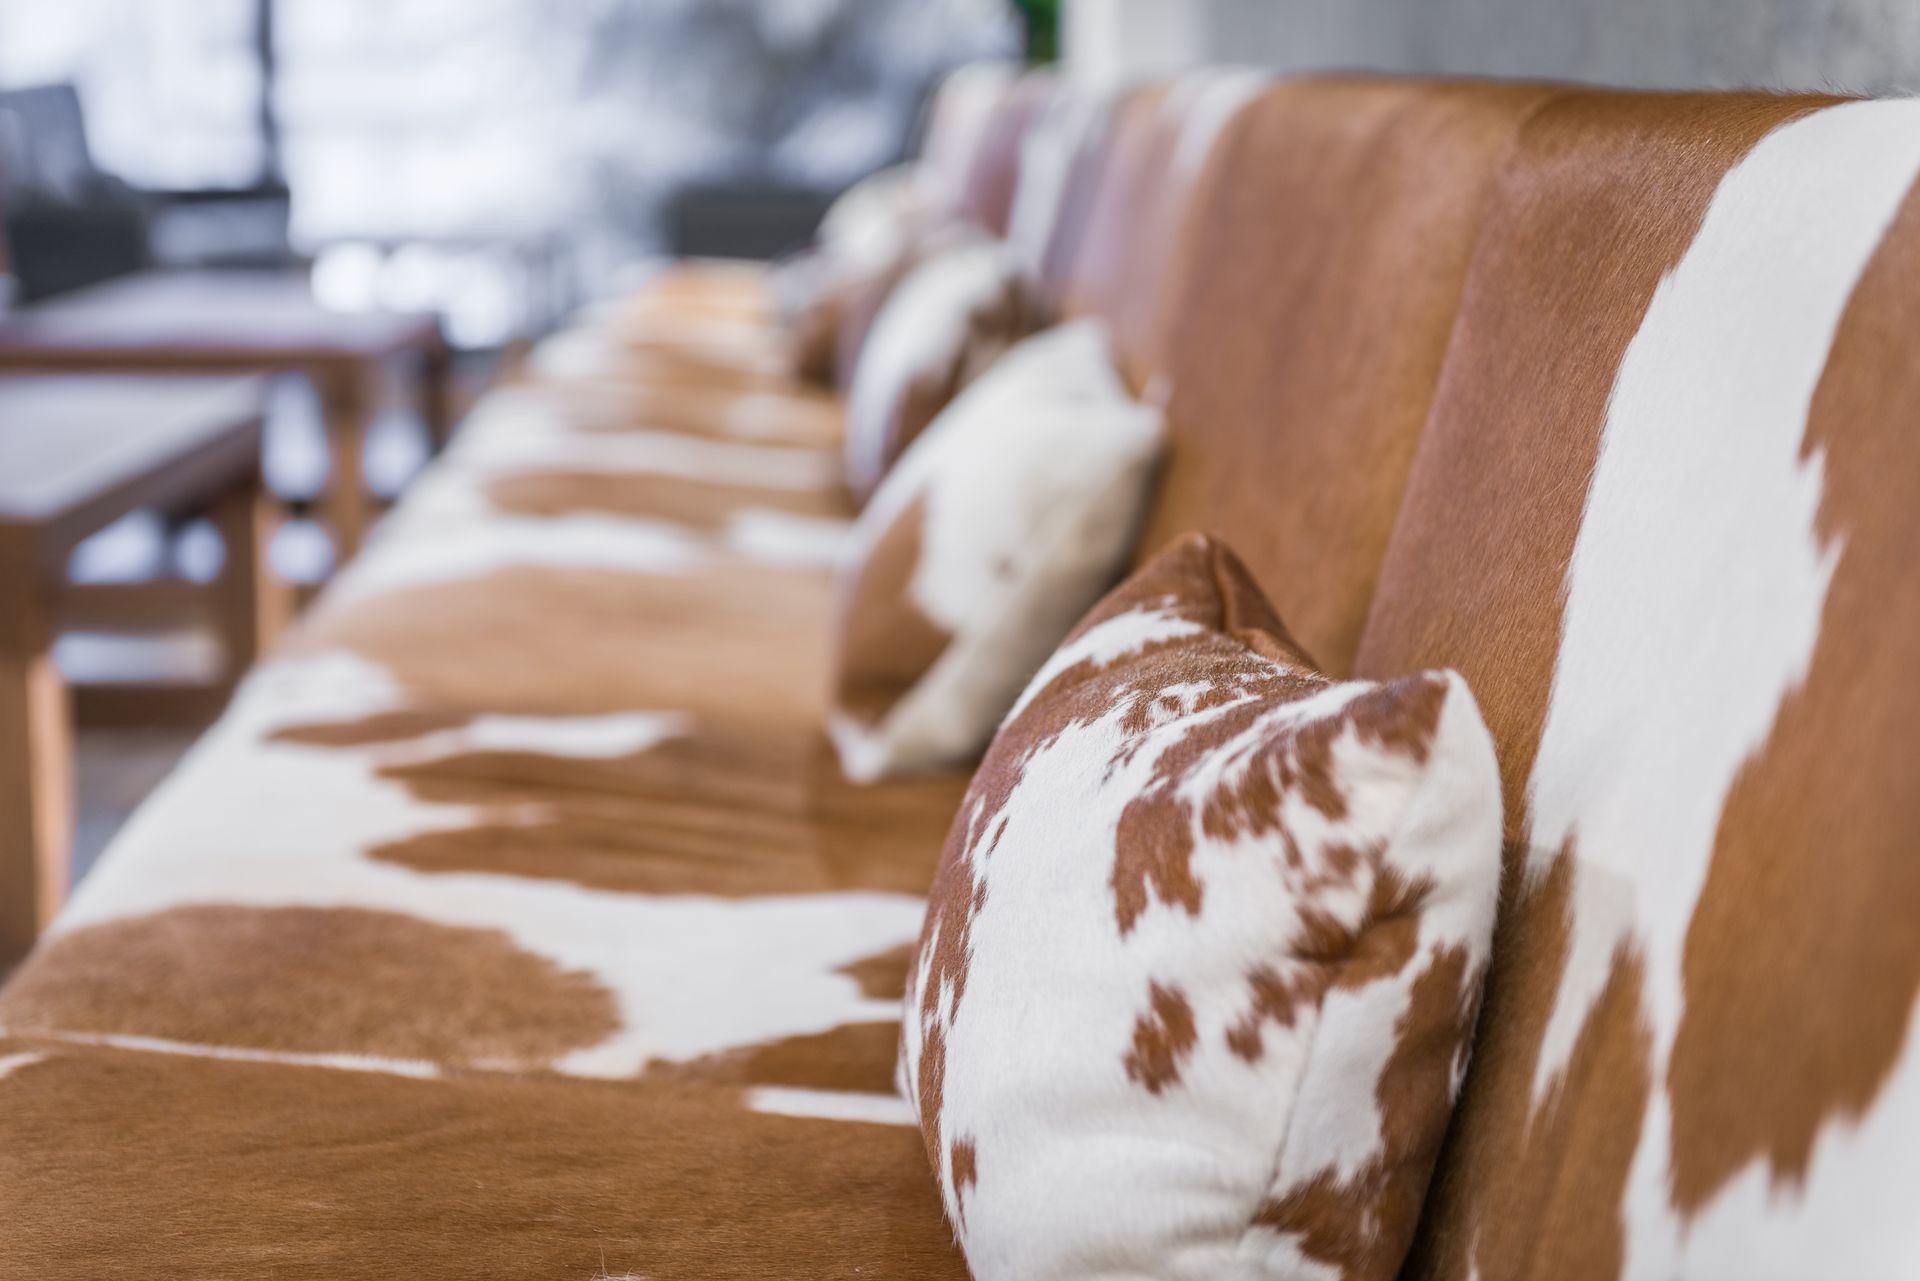 Animal printed sofa in restaurant interior